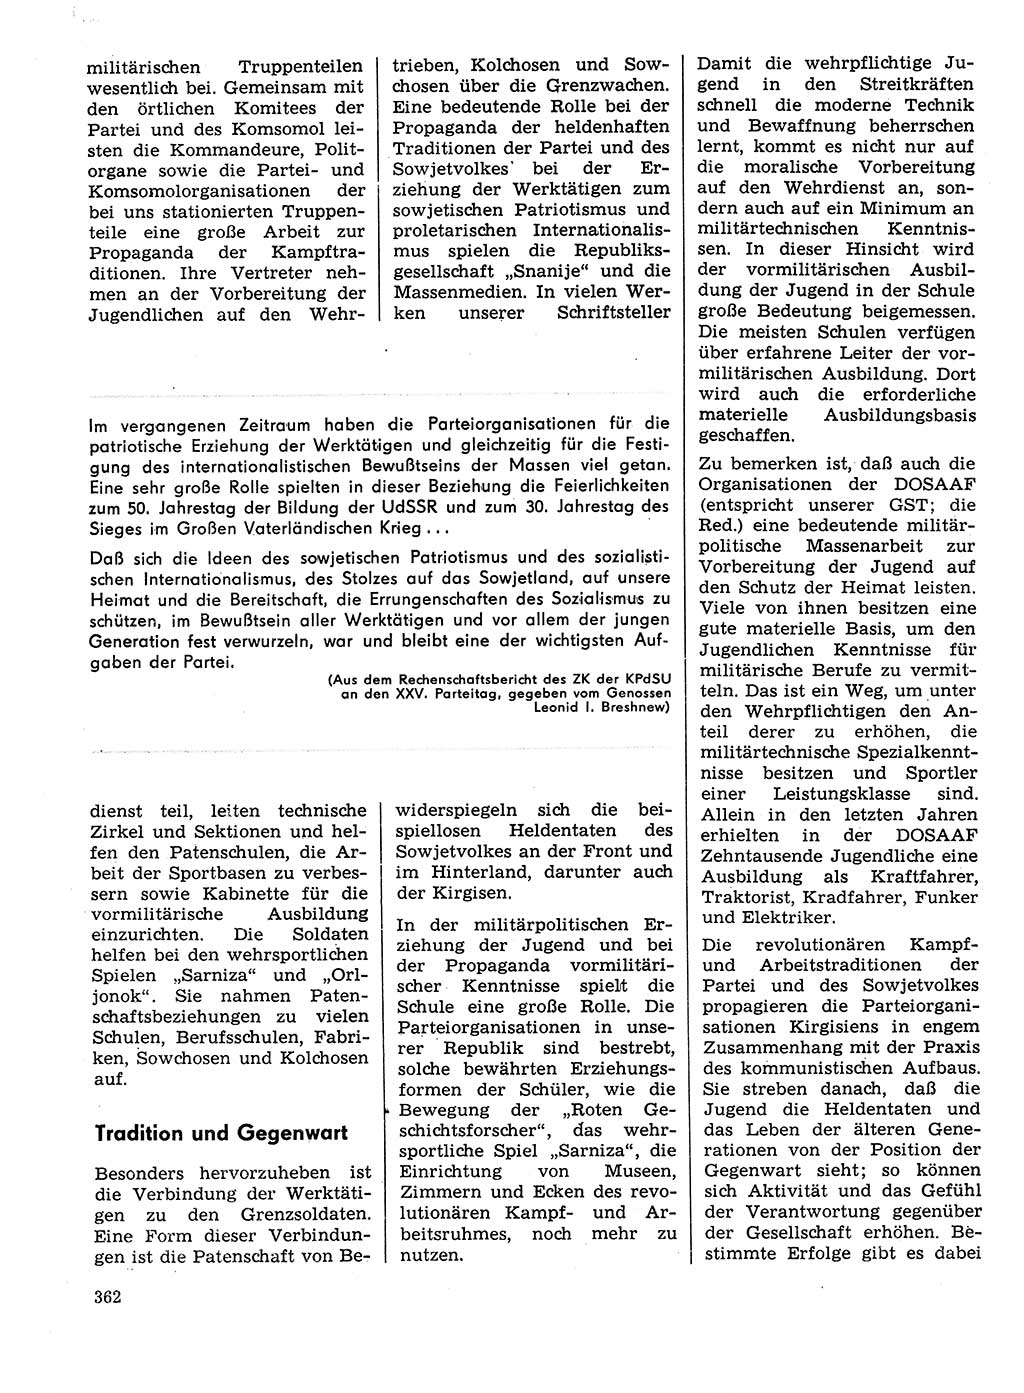 Neuer Weg (NW), Organ des Zentralkomitees (ZK) der SED (Sozialistische Einheitspartei Deutschlands) für Fragen des Parteilebens, 31. Jahrgang [Deutsche Demokratische Republik (DDR)] 1976, Seite 362 (NW ZK SED DDR 1976, S. 362)